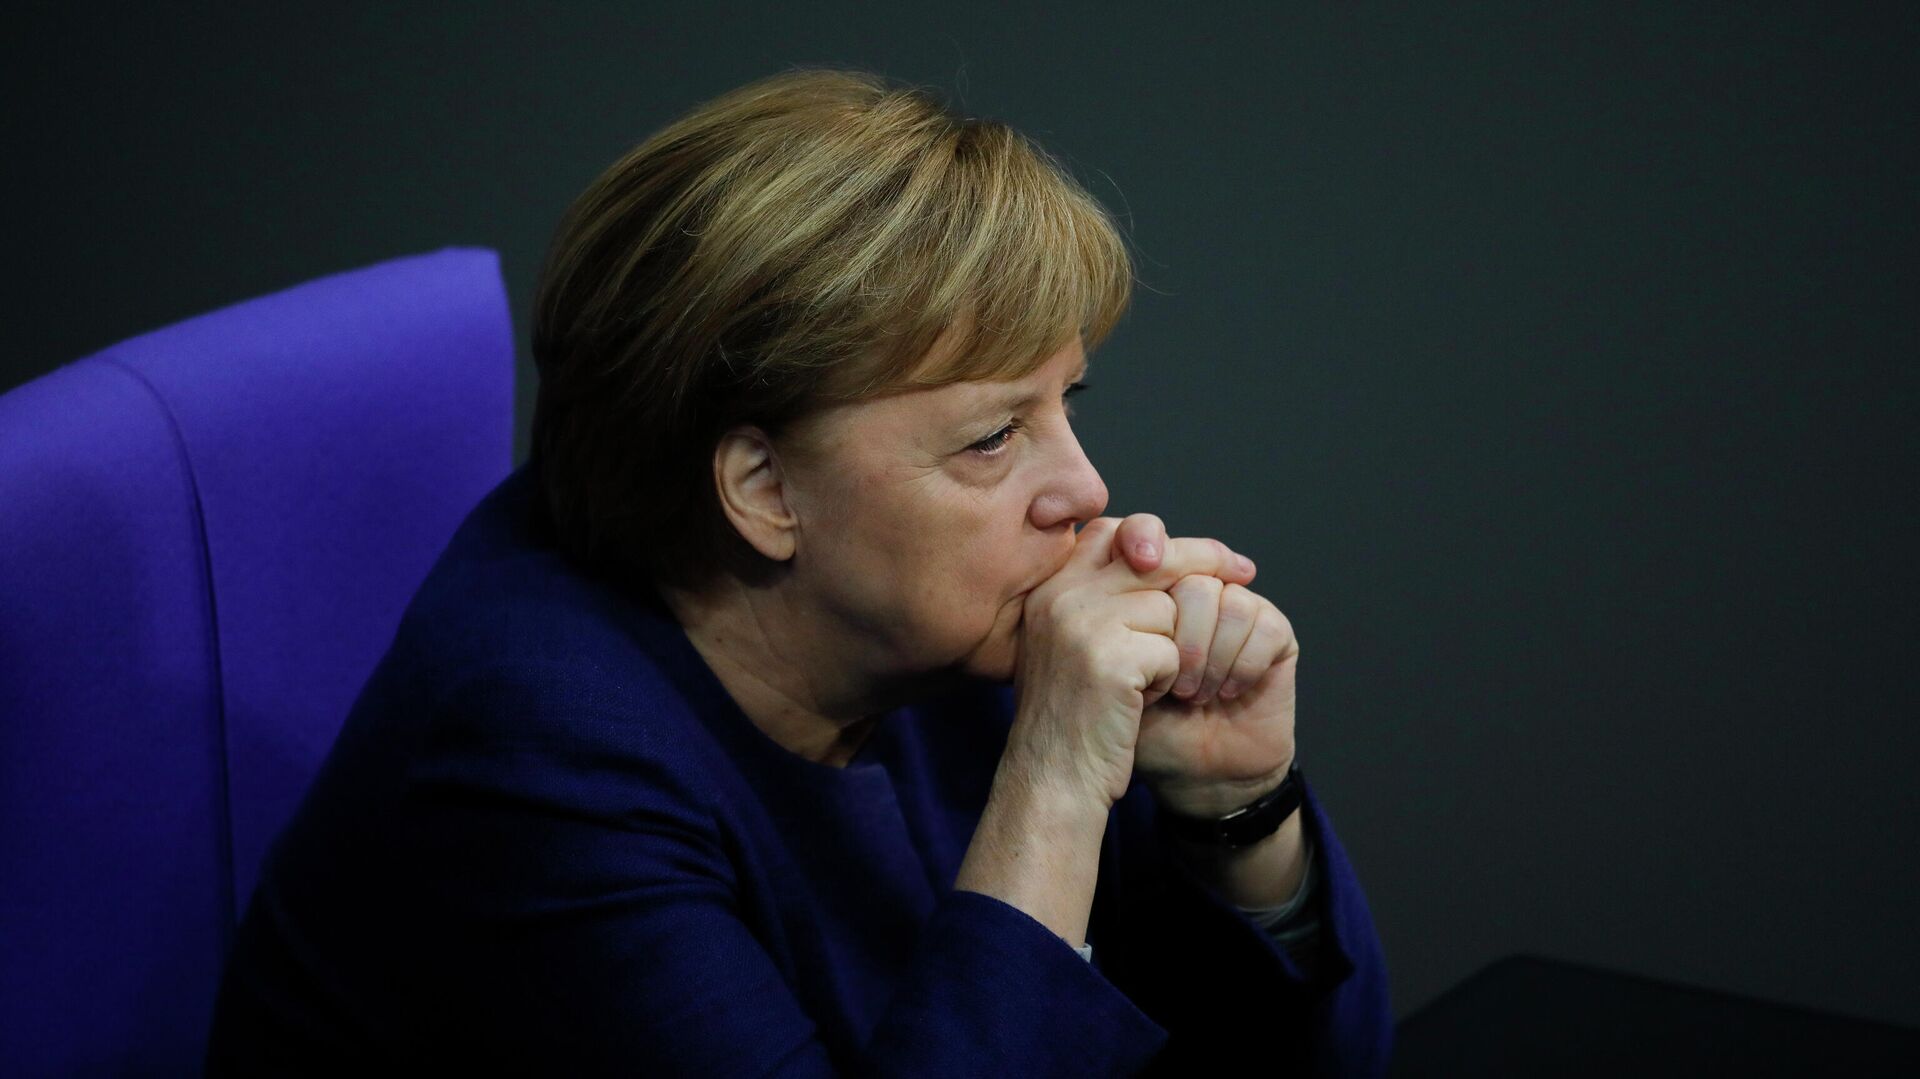 Канцлер Германи Ангела Меркель в Бундестаге, Берлин  - РИА Новости, 1920, 24.03.2021